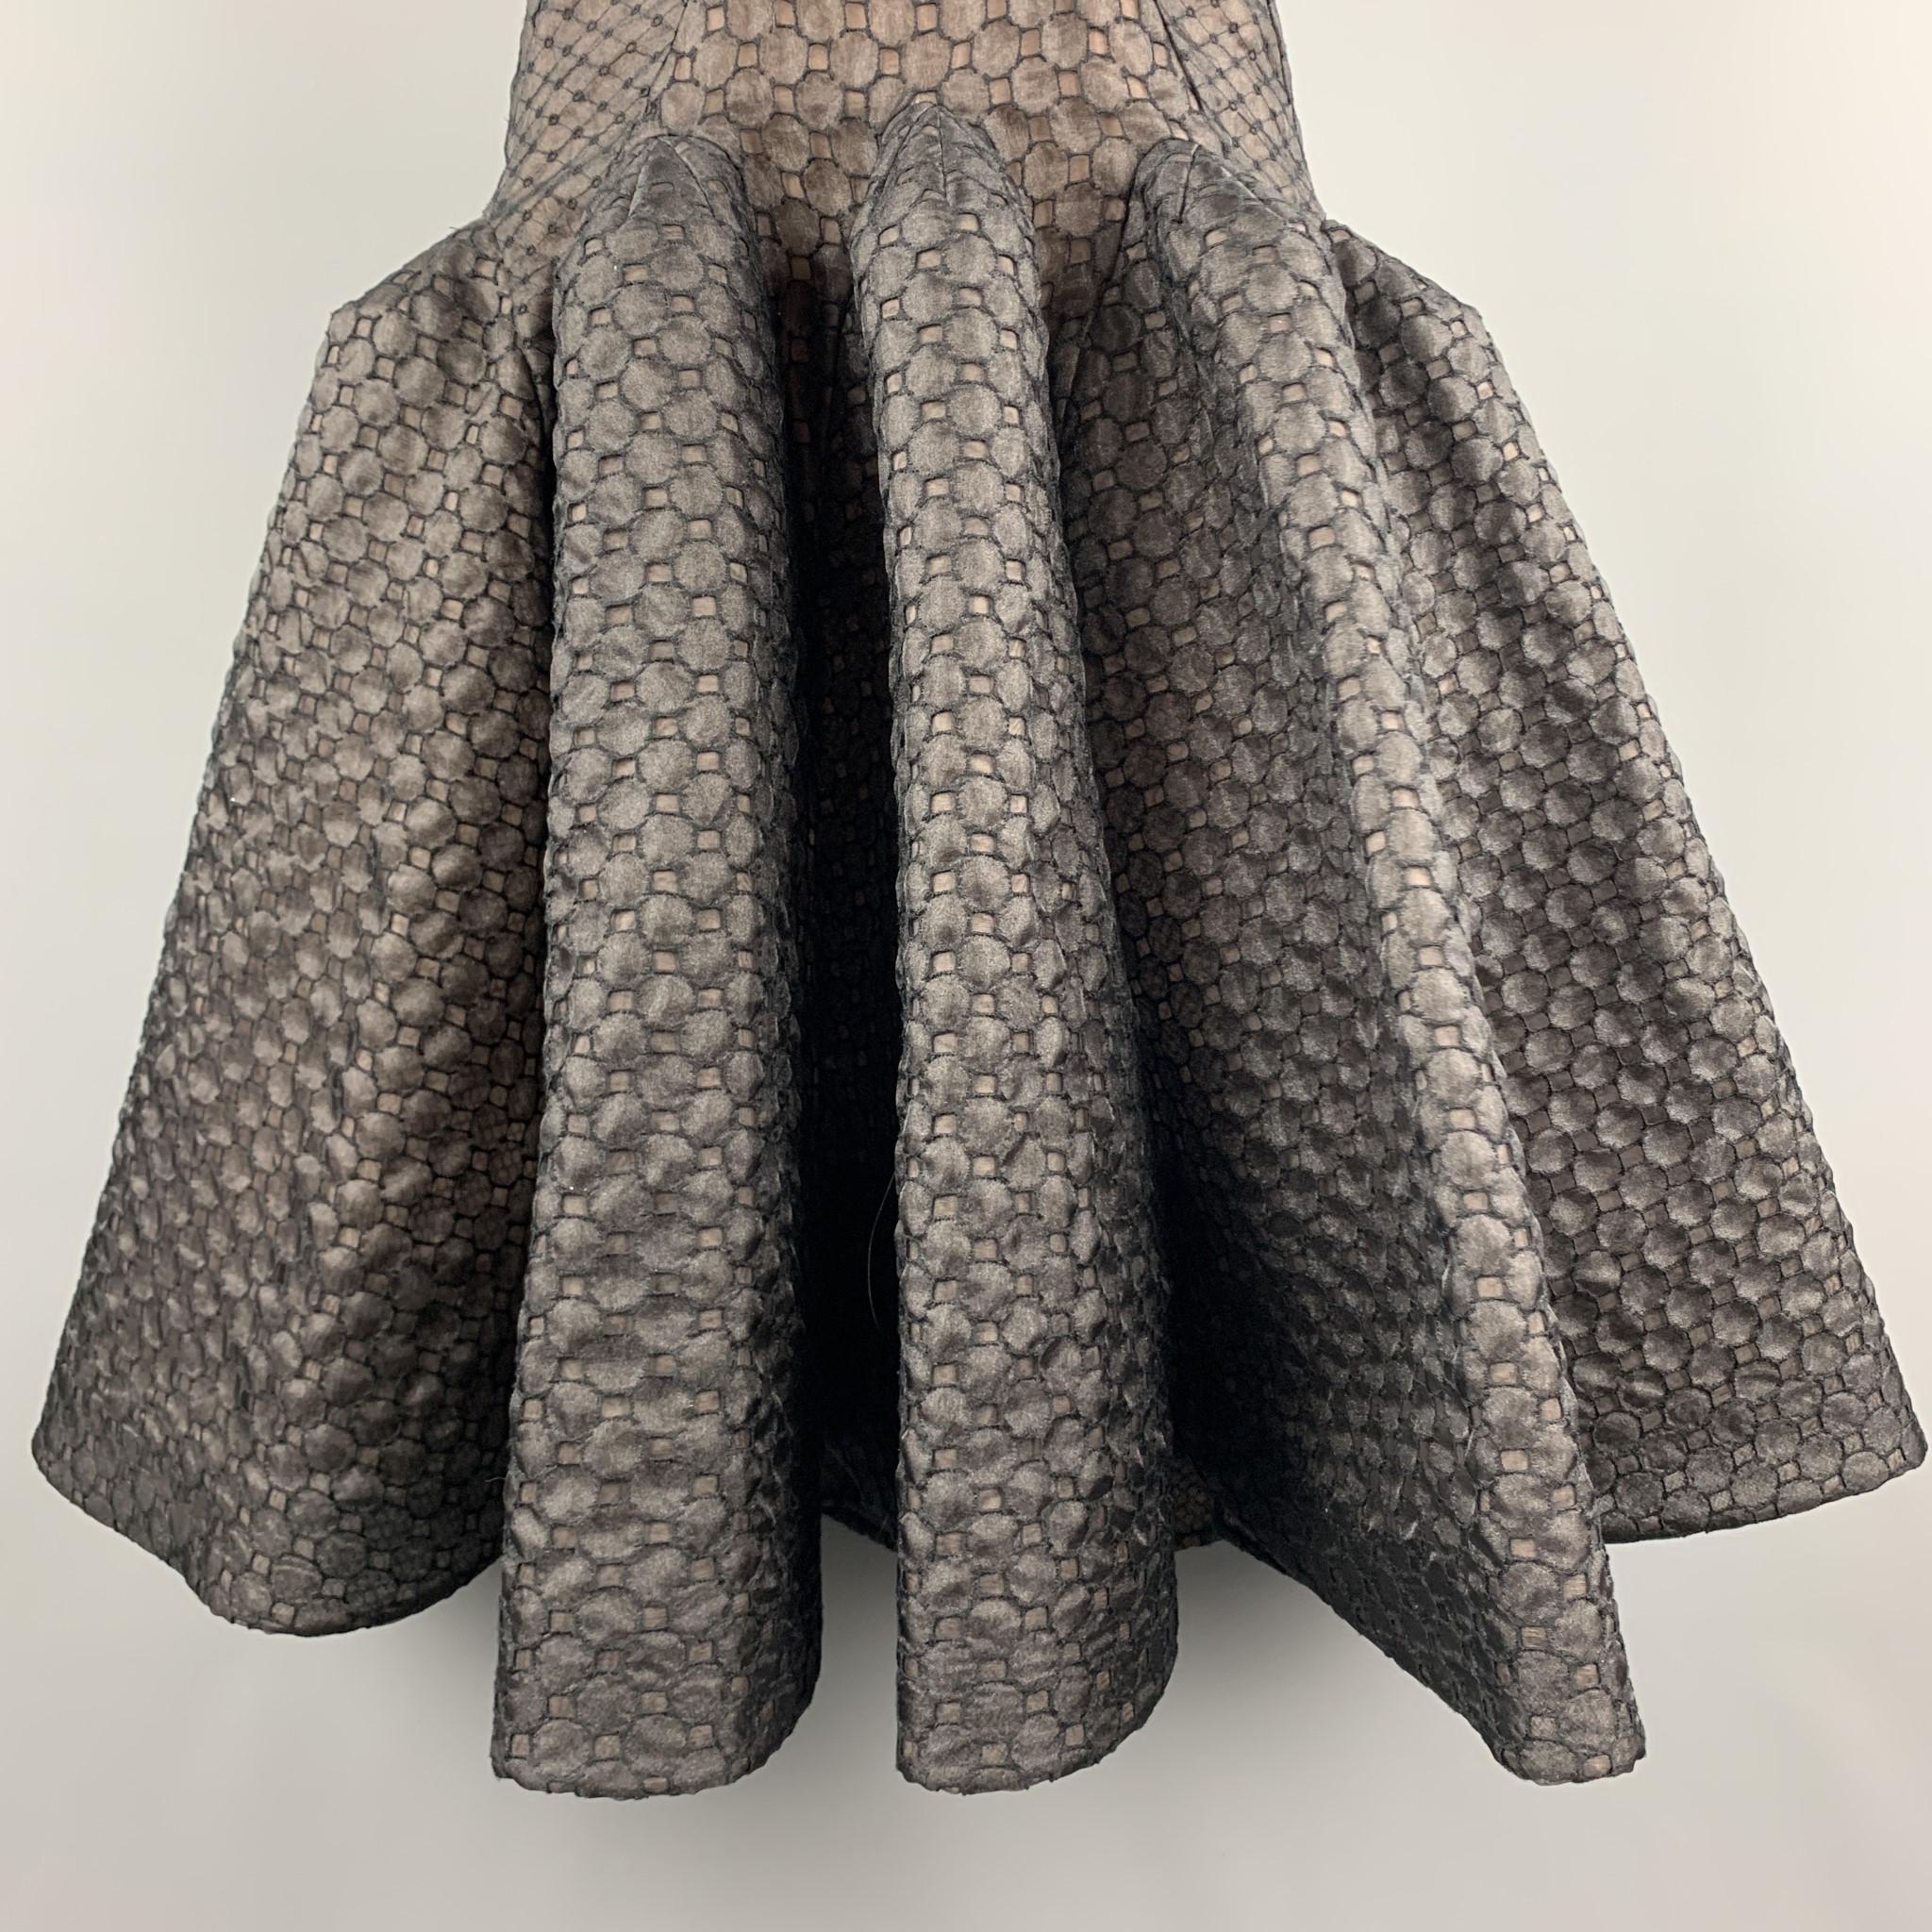 black lace ruffle skirt